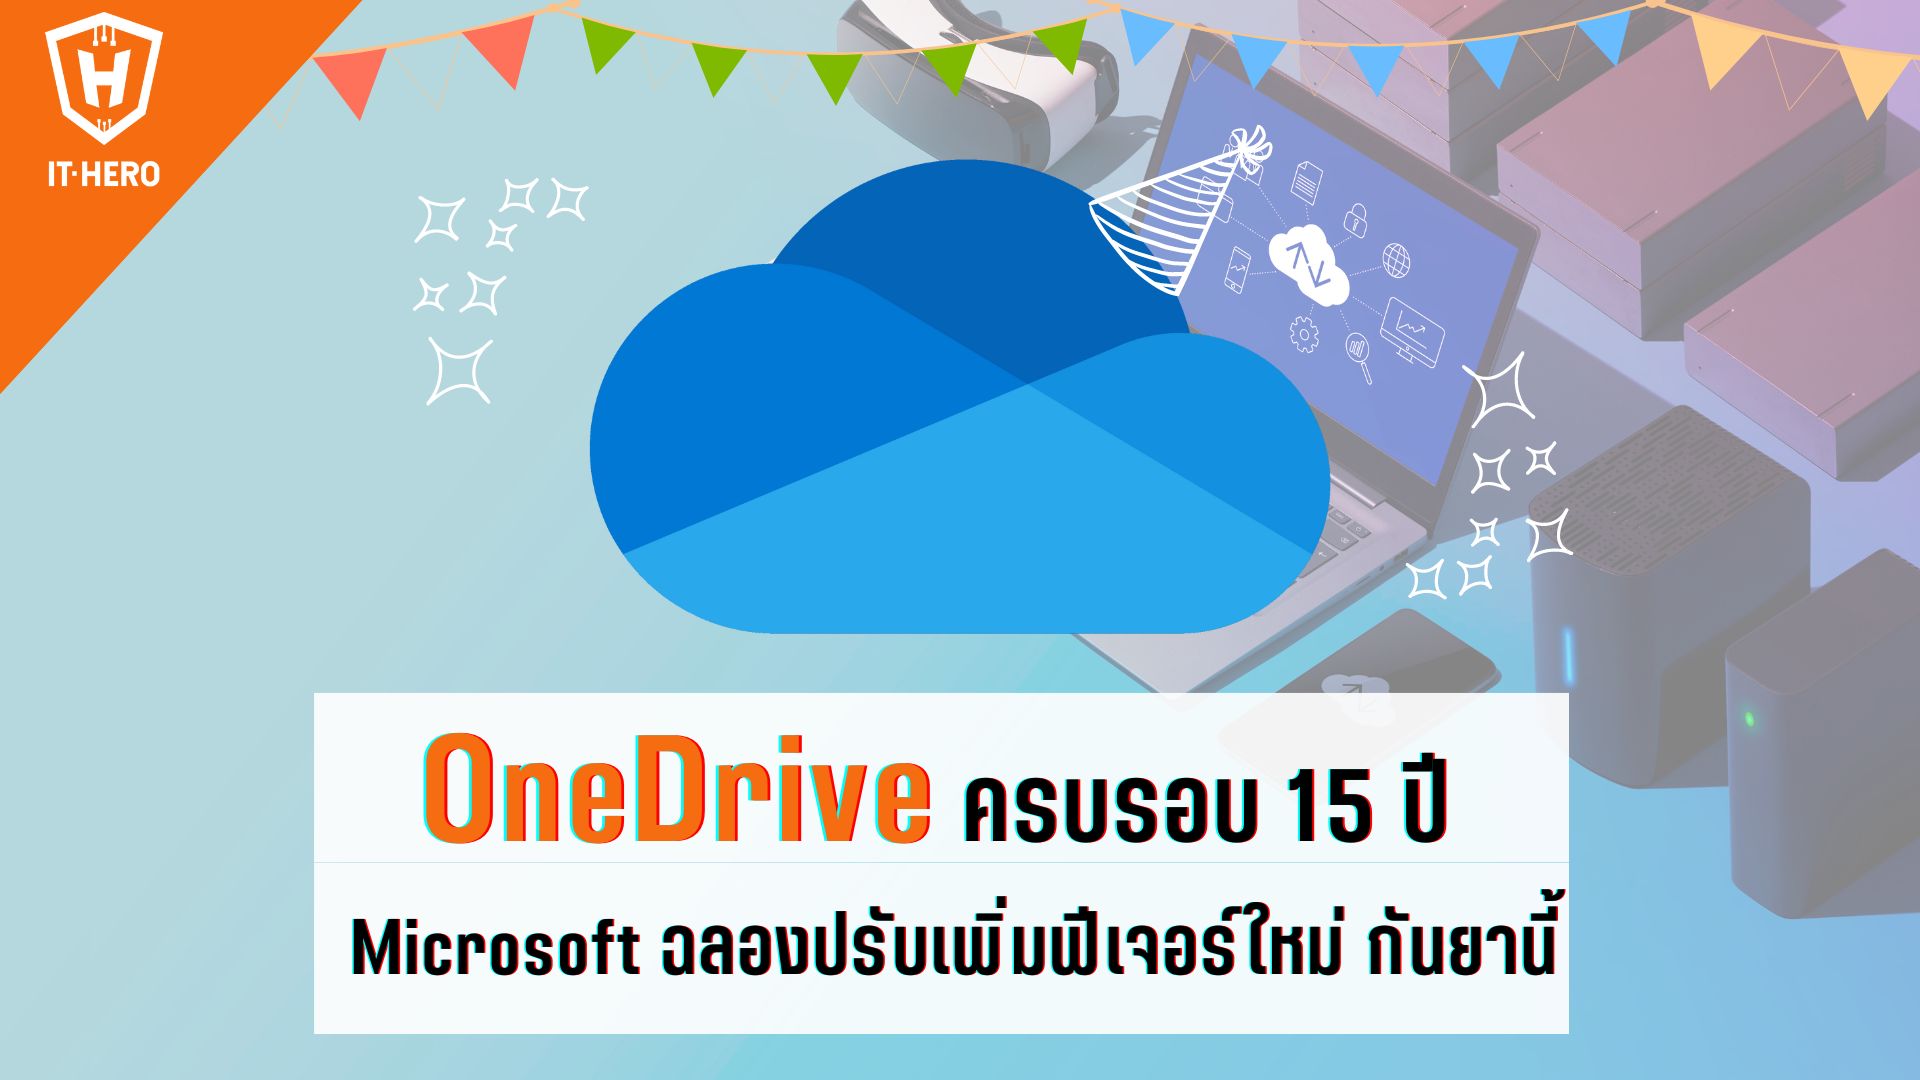 Microsoft เตรียมฉลอง OneDrive ครบรอบ 15 ปี ด้วยการปรับโฉมและเพิ่มฟีเจอร์ใหม่กันยายนนี้